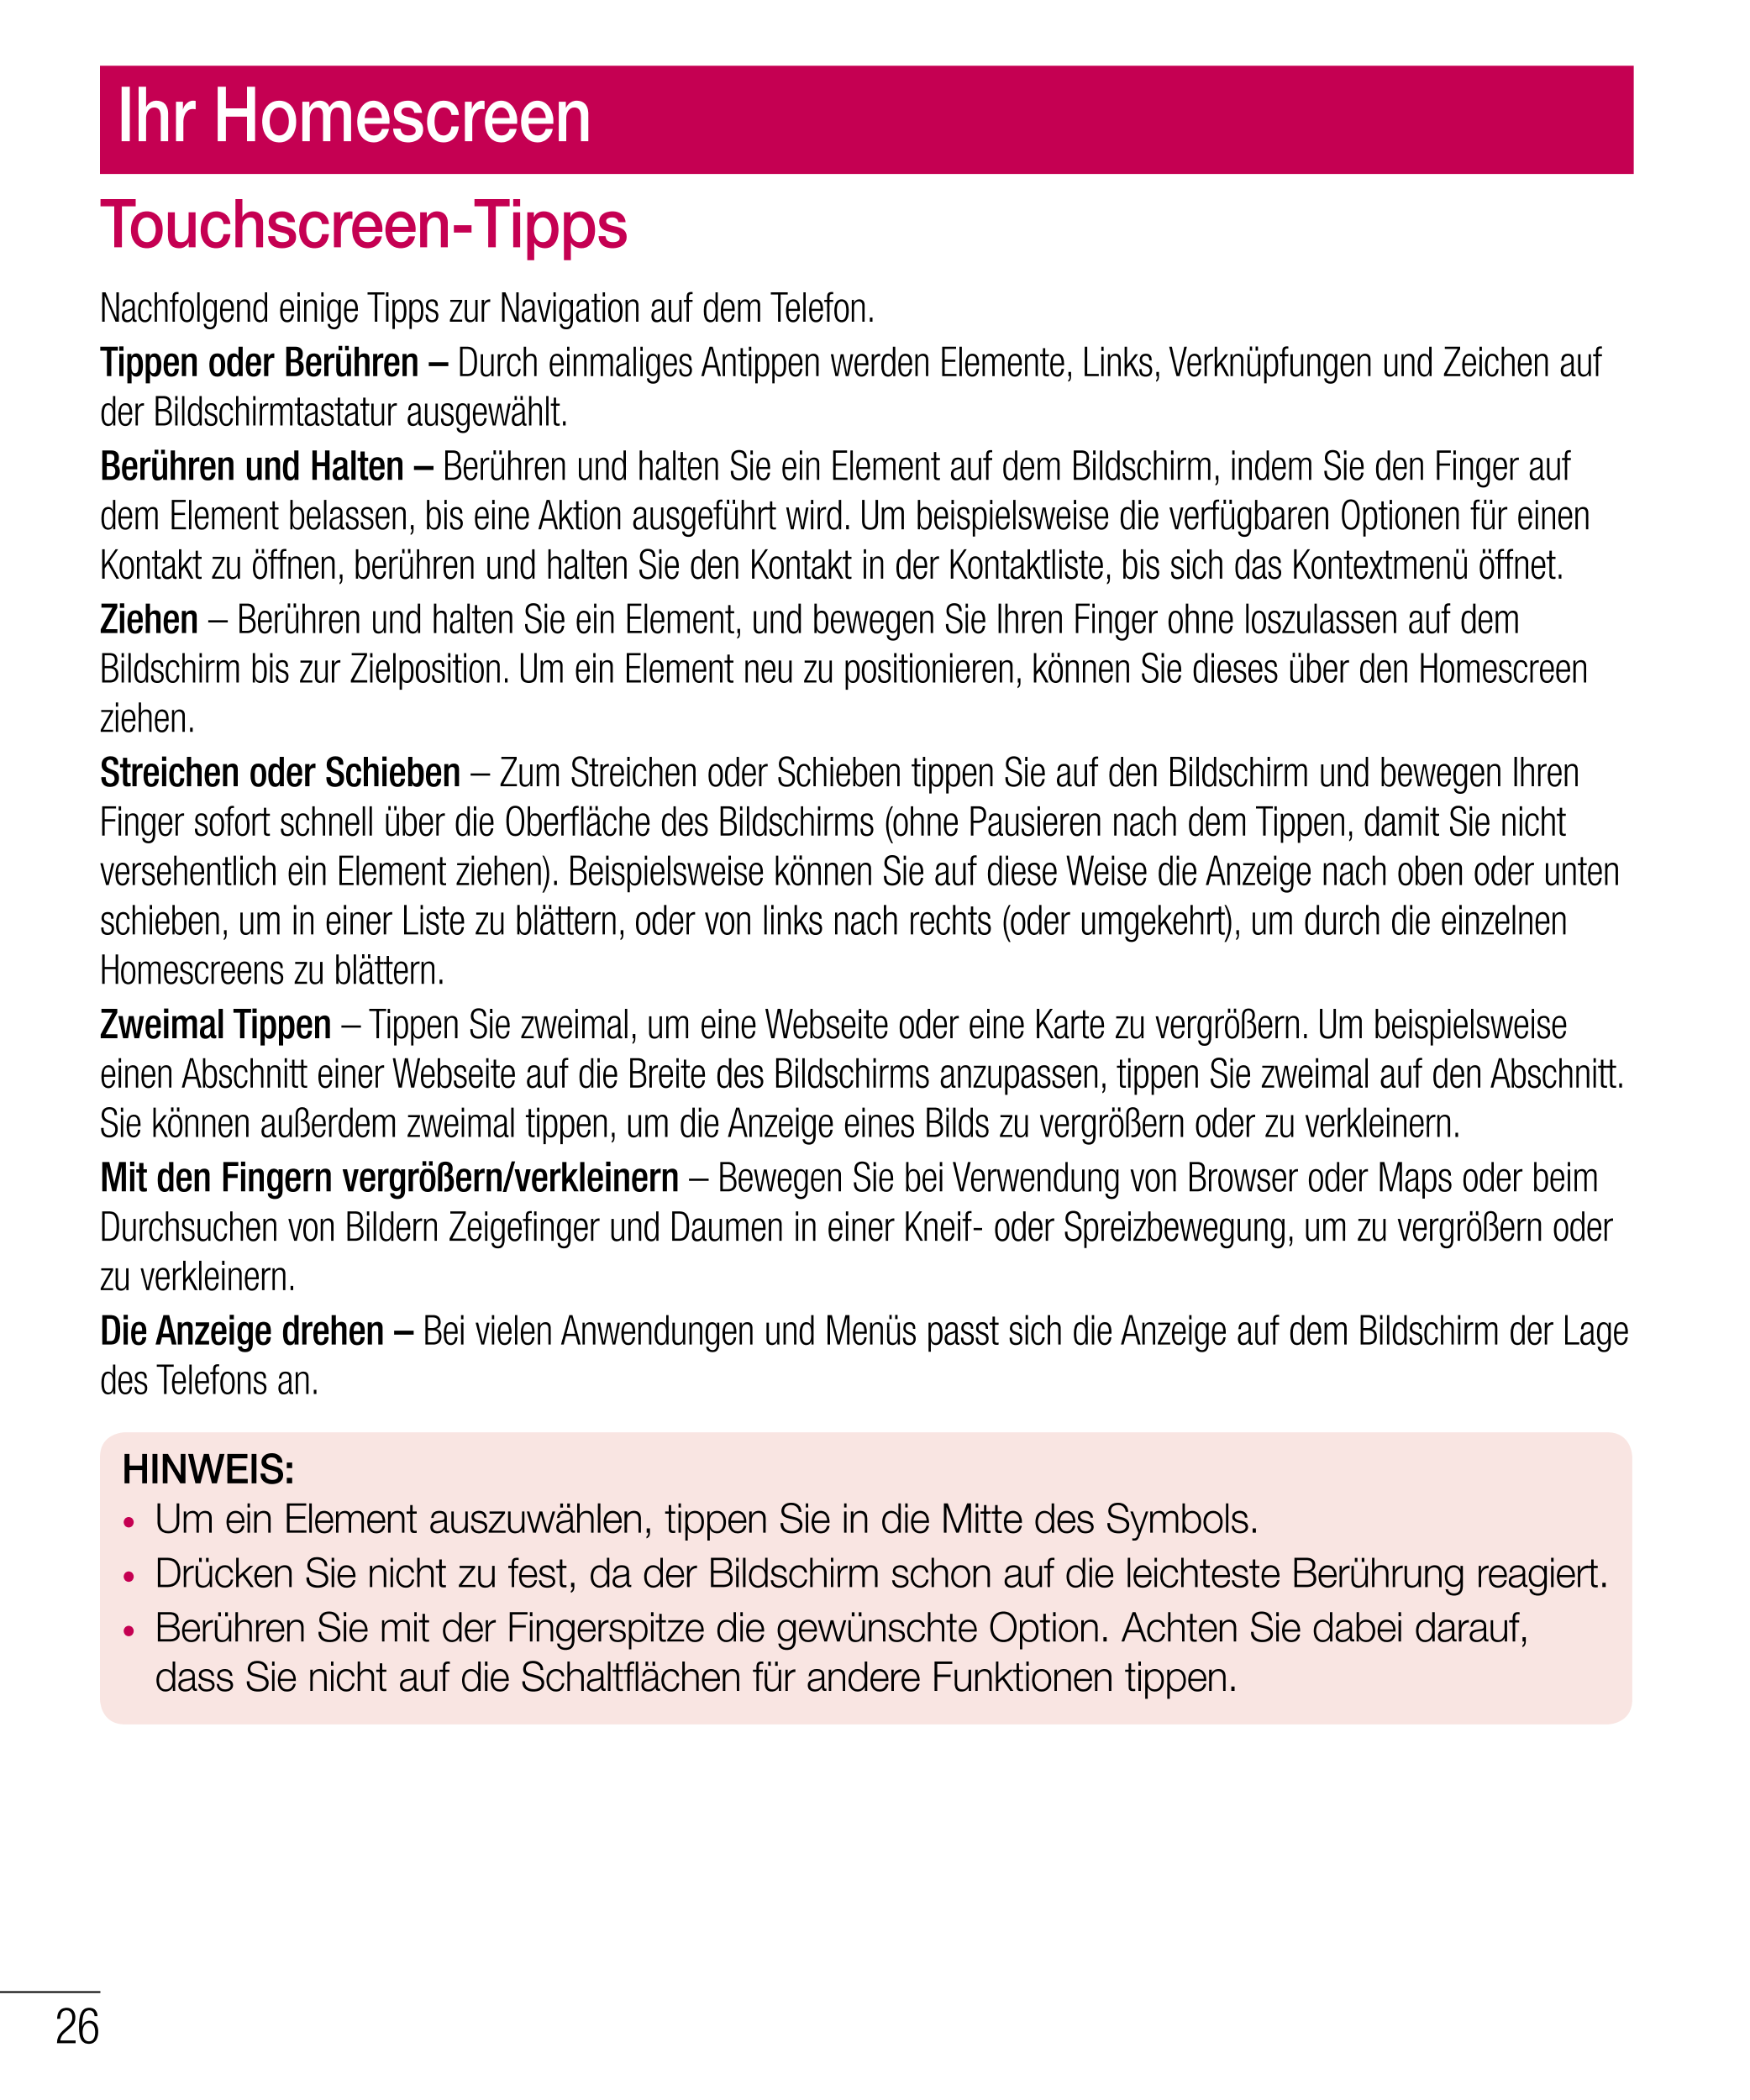 Ihr Homescreen
Touchscreen-Tipps
Nachfolgend einige Tipps zur Navigation auf dem Telefon.
Tippen oder Berühren – Durch einmalige